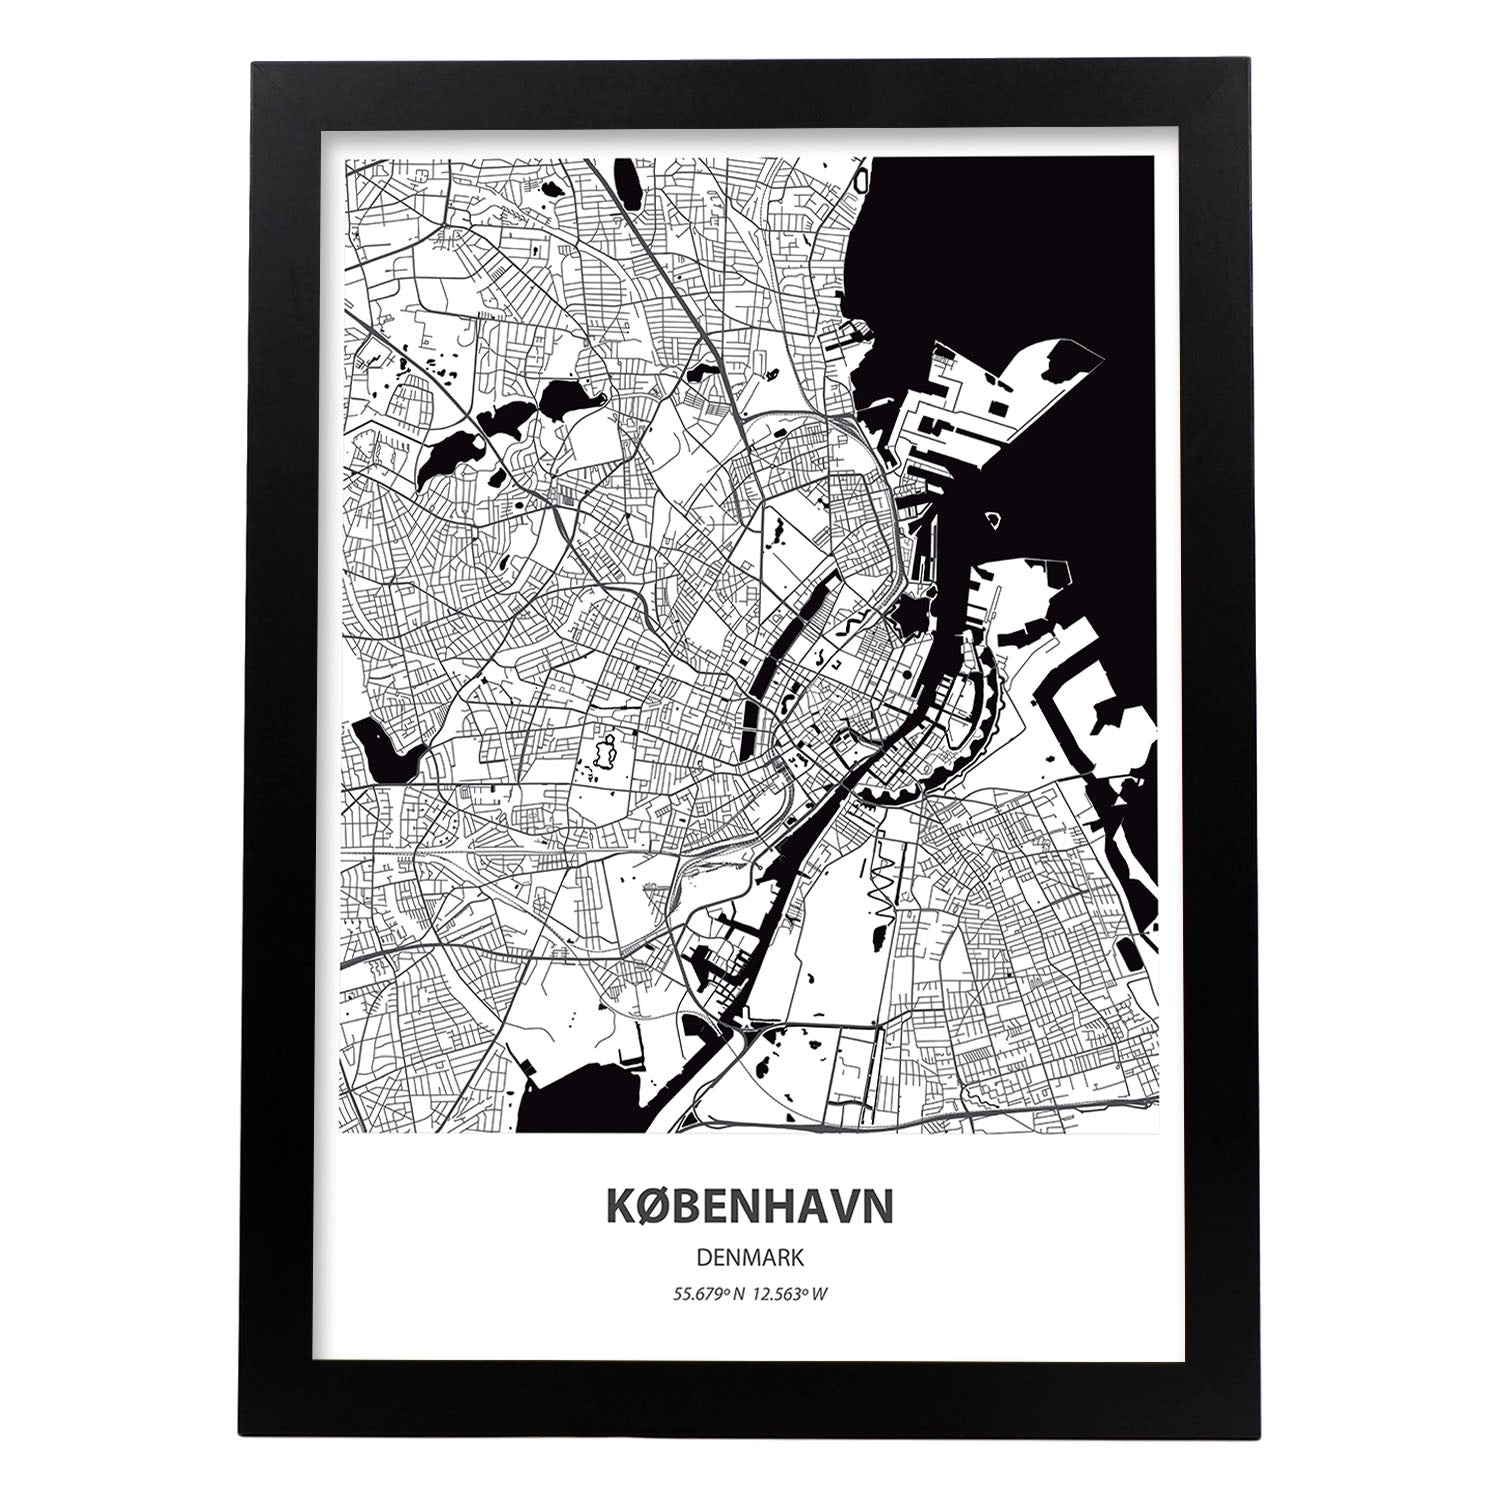 Poster con mapa de Kobenhavn - Dinamarca. Láminas de ciudades de Europa con mares y ríos en color negro.-Artwork-Nacnic-A4-Marco Negro-Nacnic Estudio SL